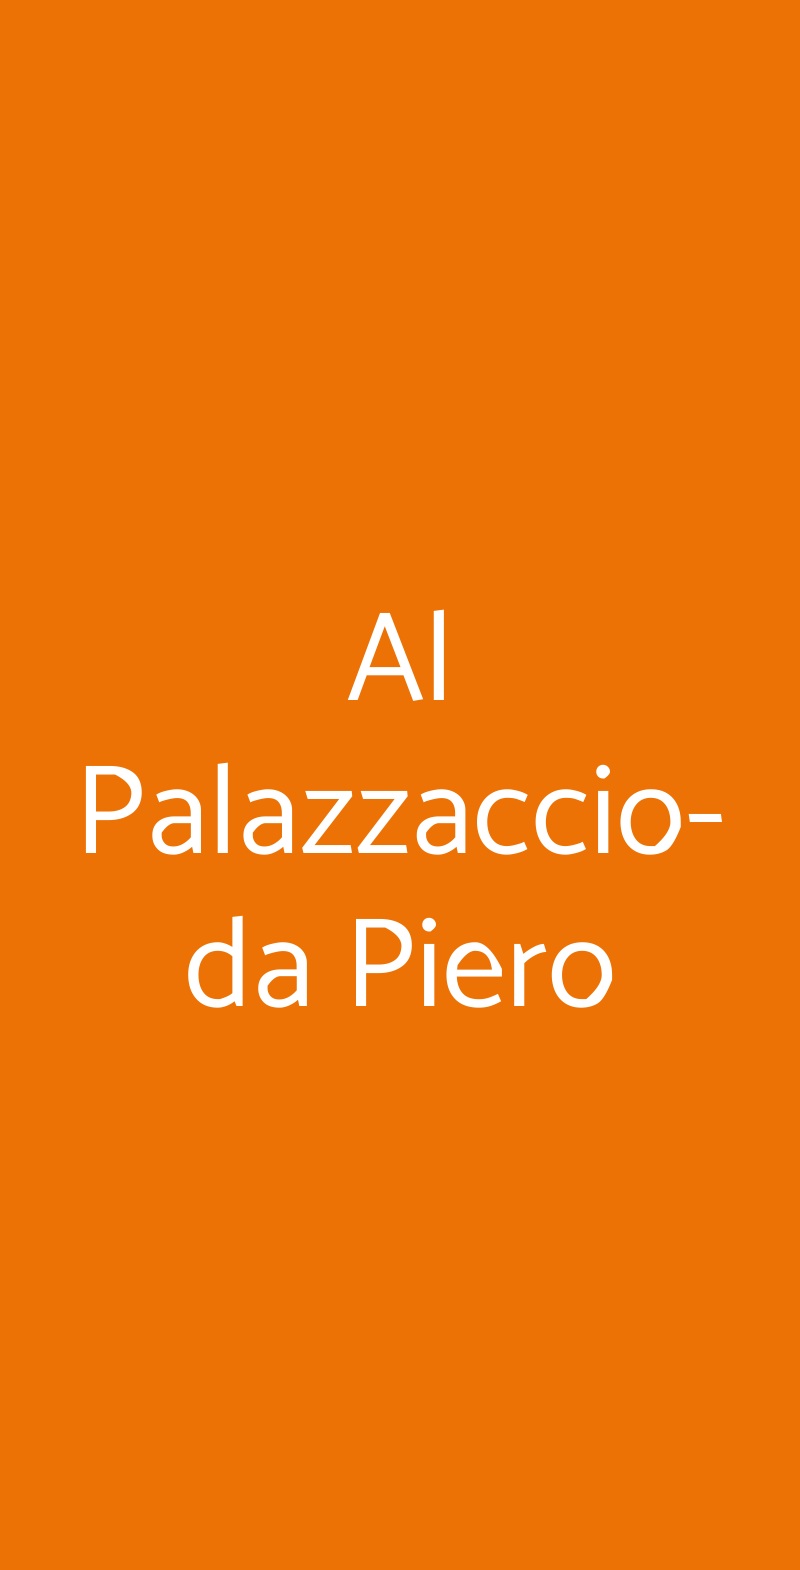 Al Palazzaccio-da Piero Spoleto menù 1 pagina